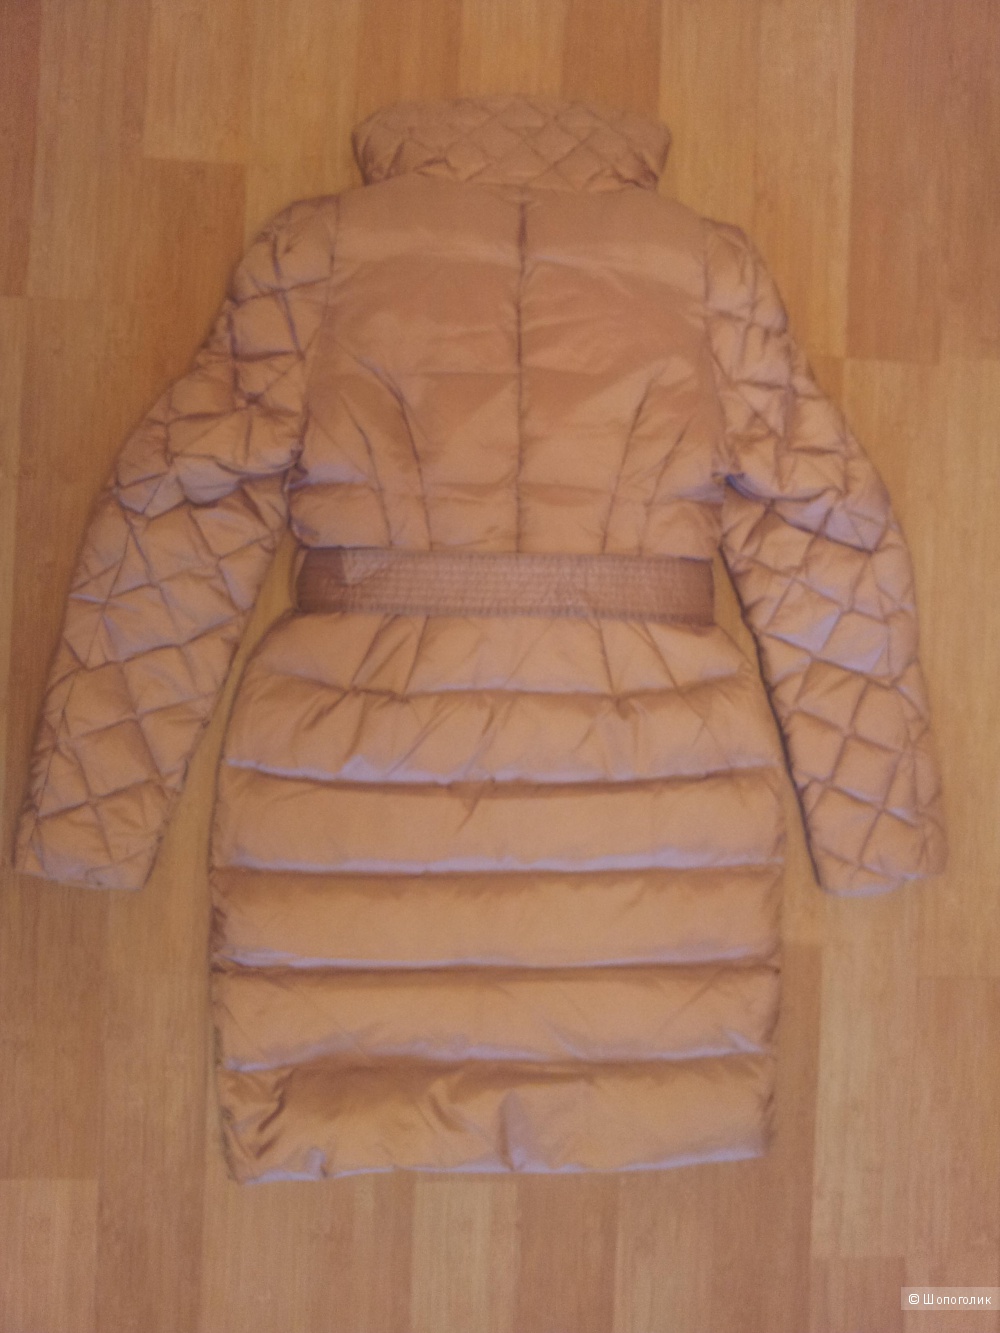 Пуховое пальто NAUMI 44 размер новое